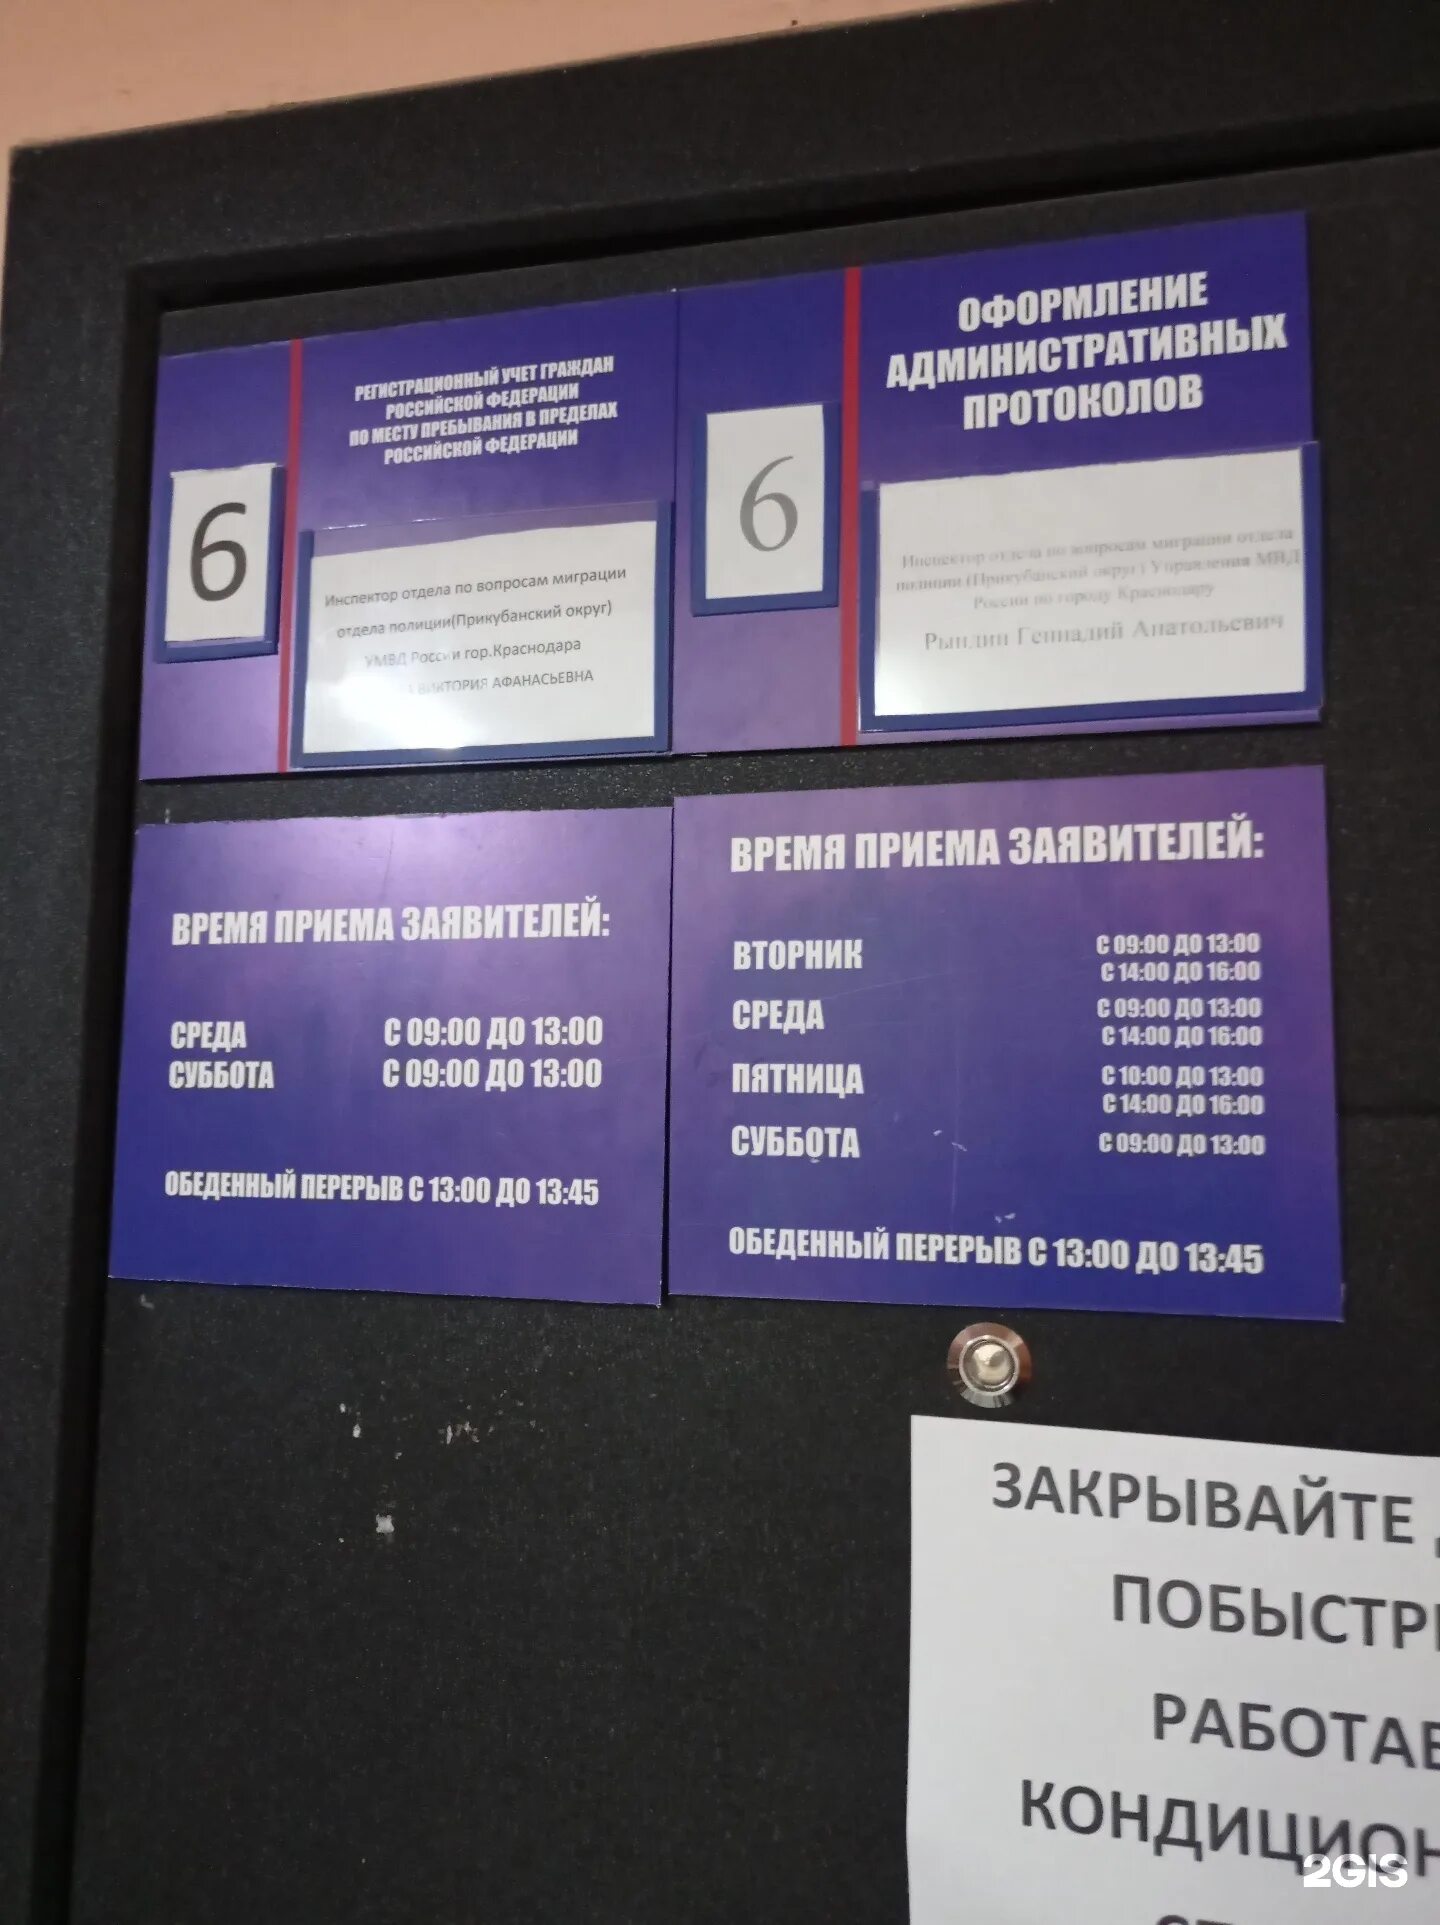 Паспортный прикубанский. Паспортный стол Прикубанского округа Краснодар. Отдел полиции Краснодар Прикубанский.